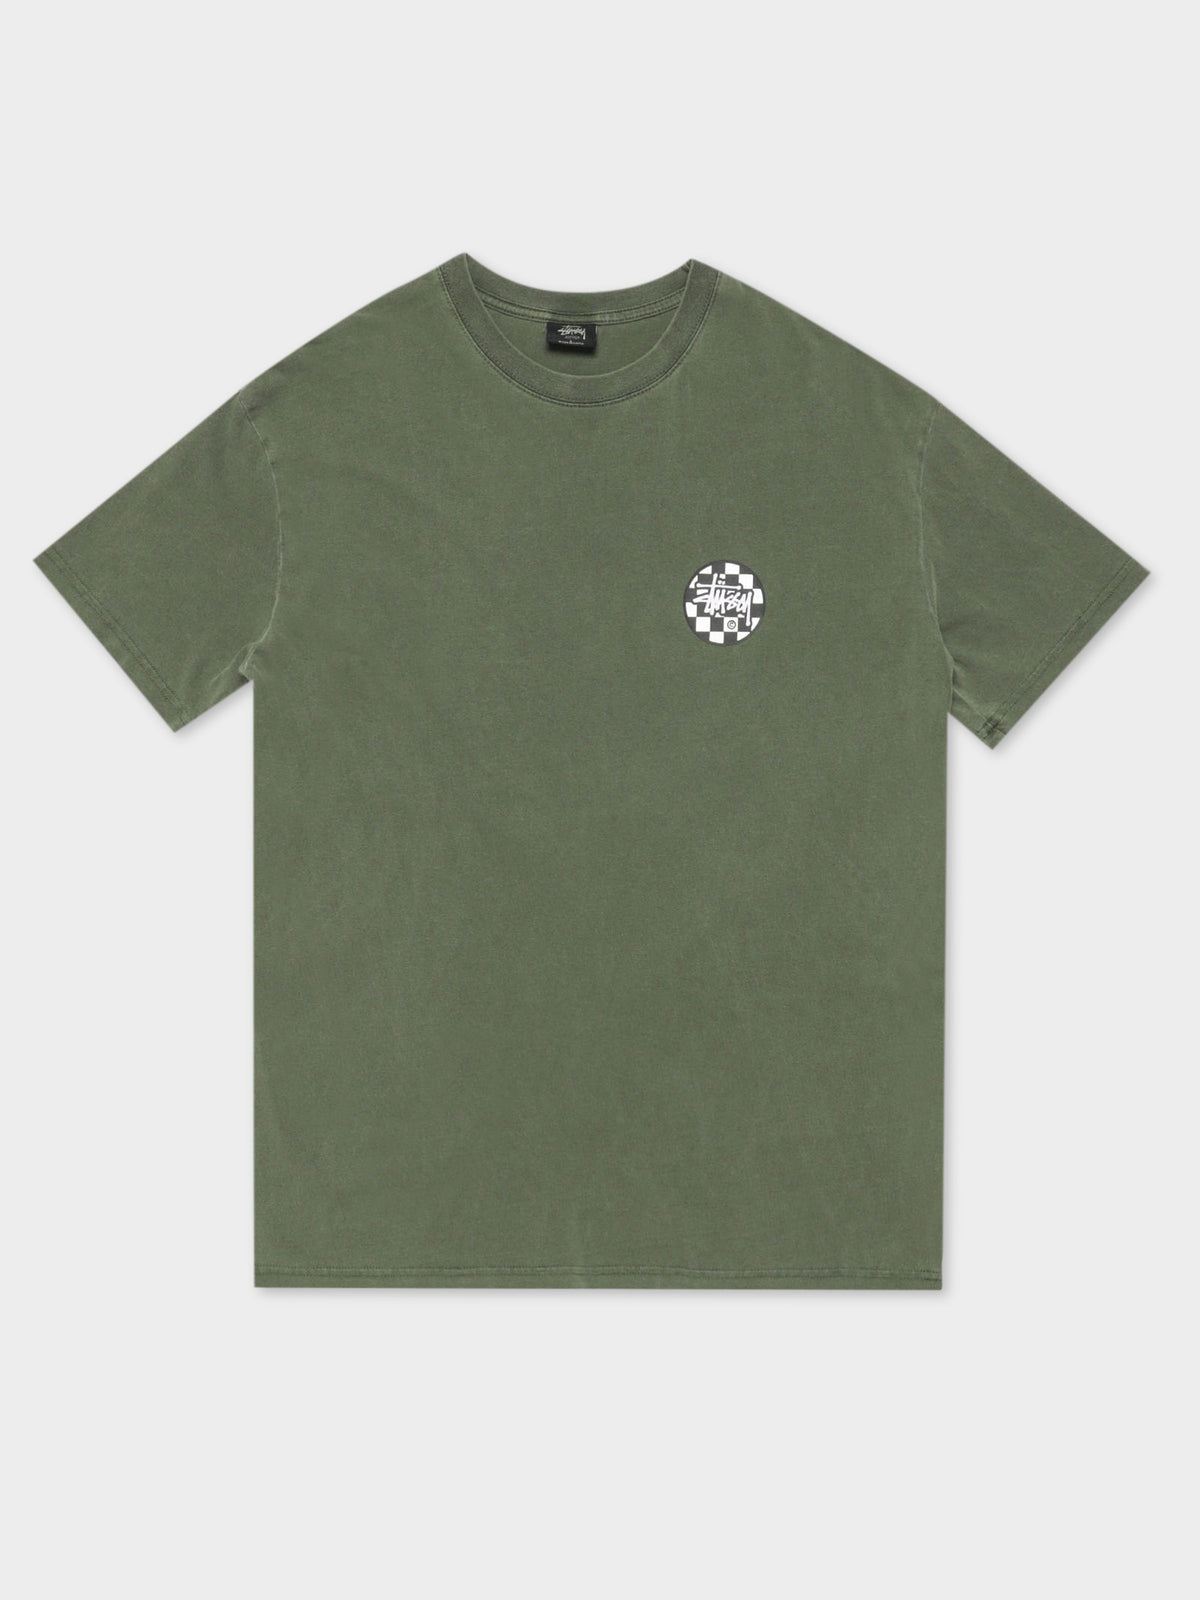 Chequer Dot Short Sleeve T-Shirt in Pigment Flight Green